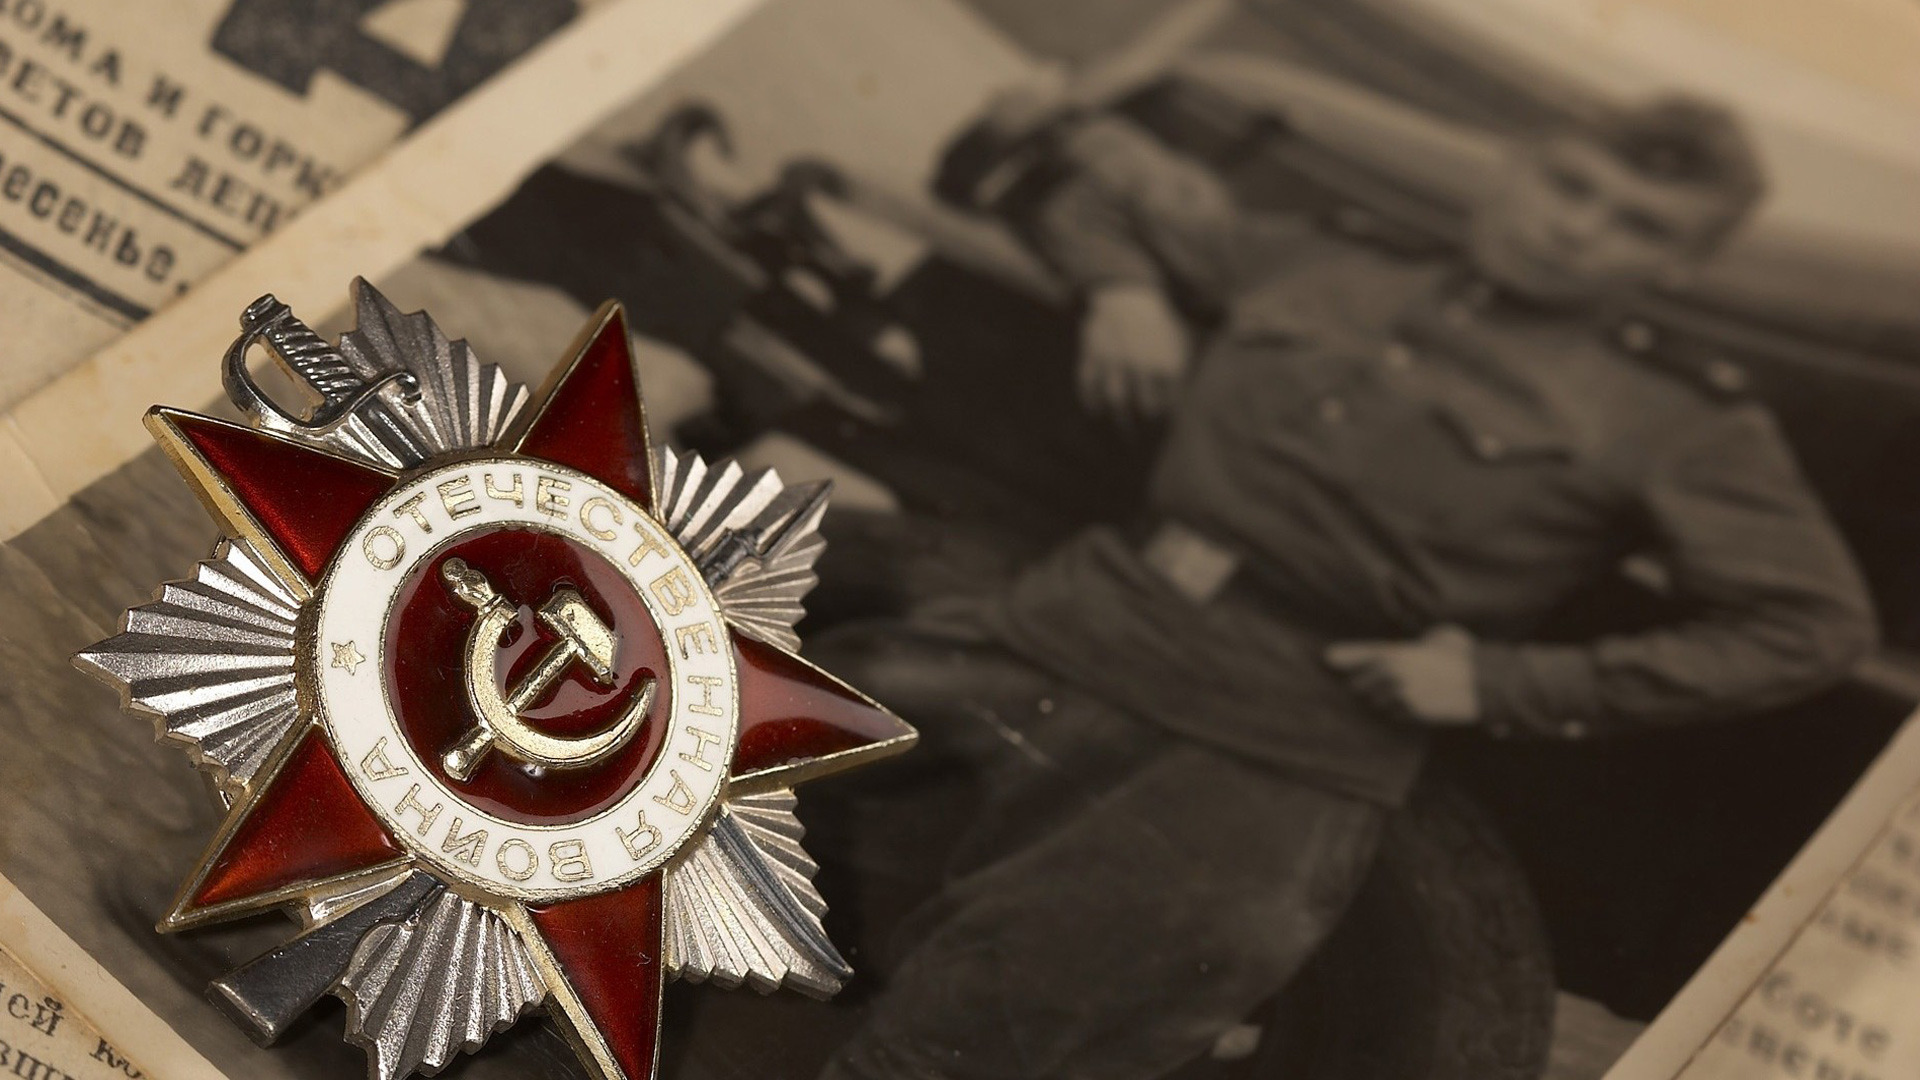 ЦГИ «Берлек-Единство»: Роль личности в Великой Отечественной войне